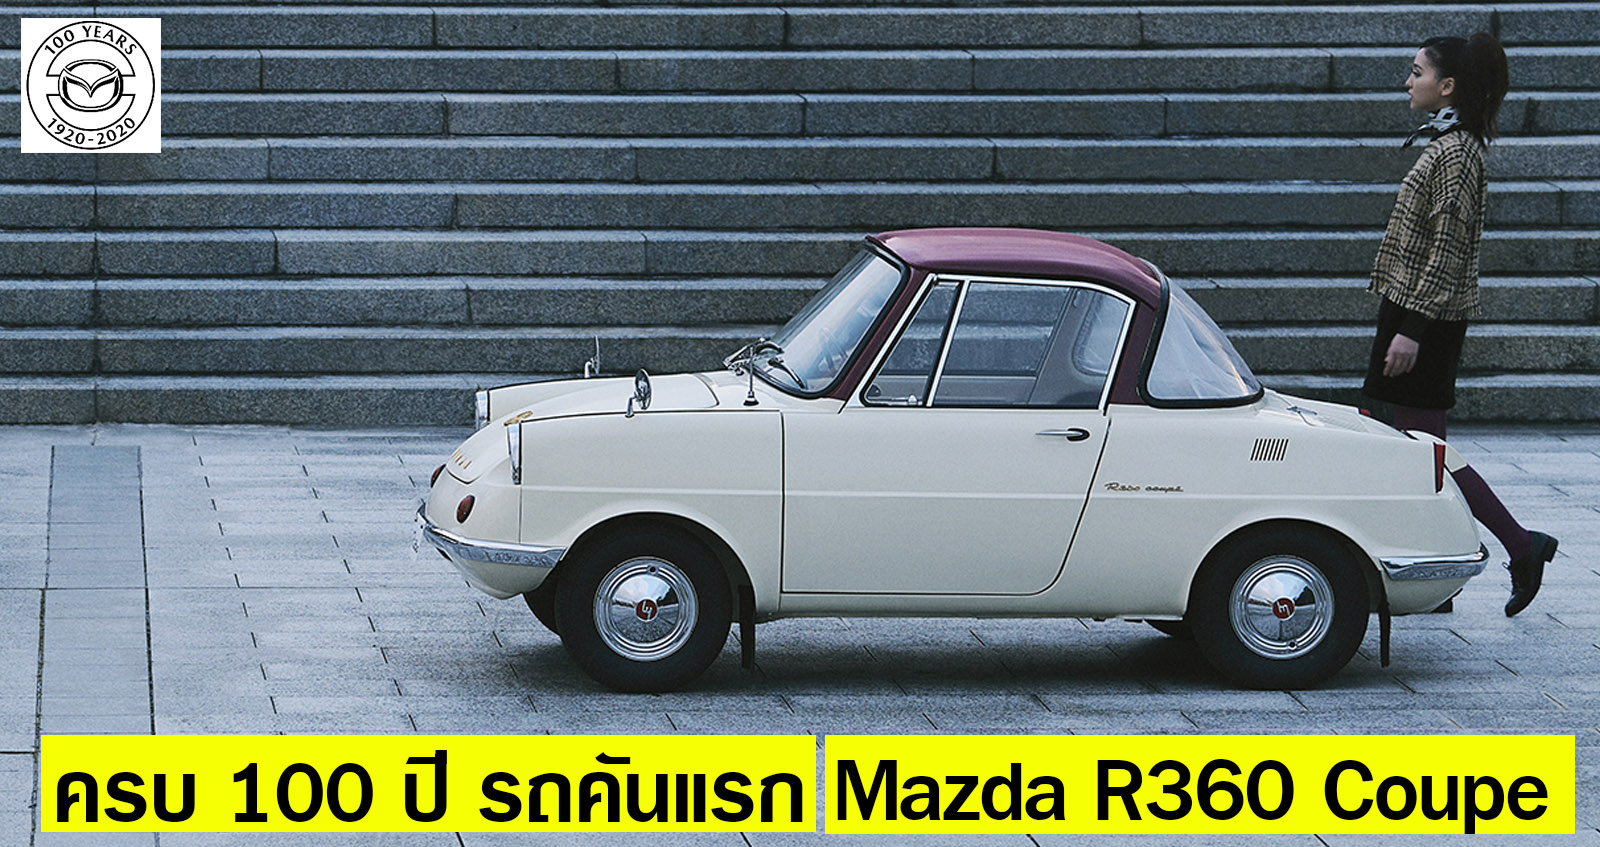 Mazda R360 Coupe รถเล็กยุค 60s ฉลองครบรอบ 100 ปี รถคันแรก และกำเนิด มาสด้า